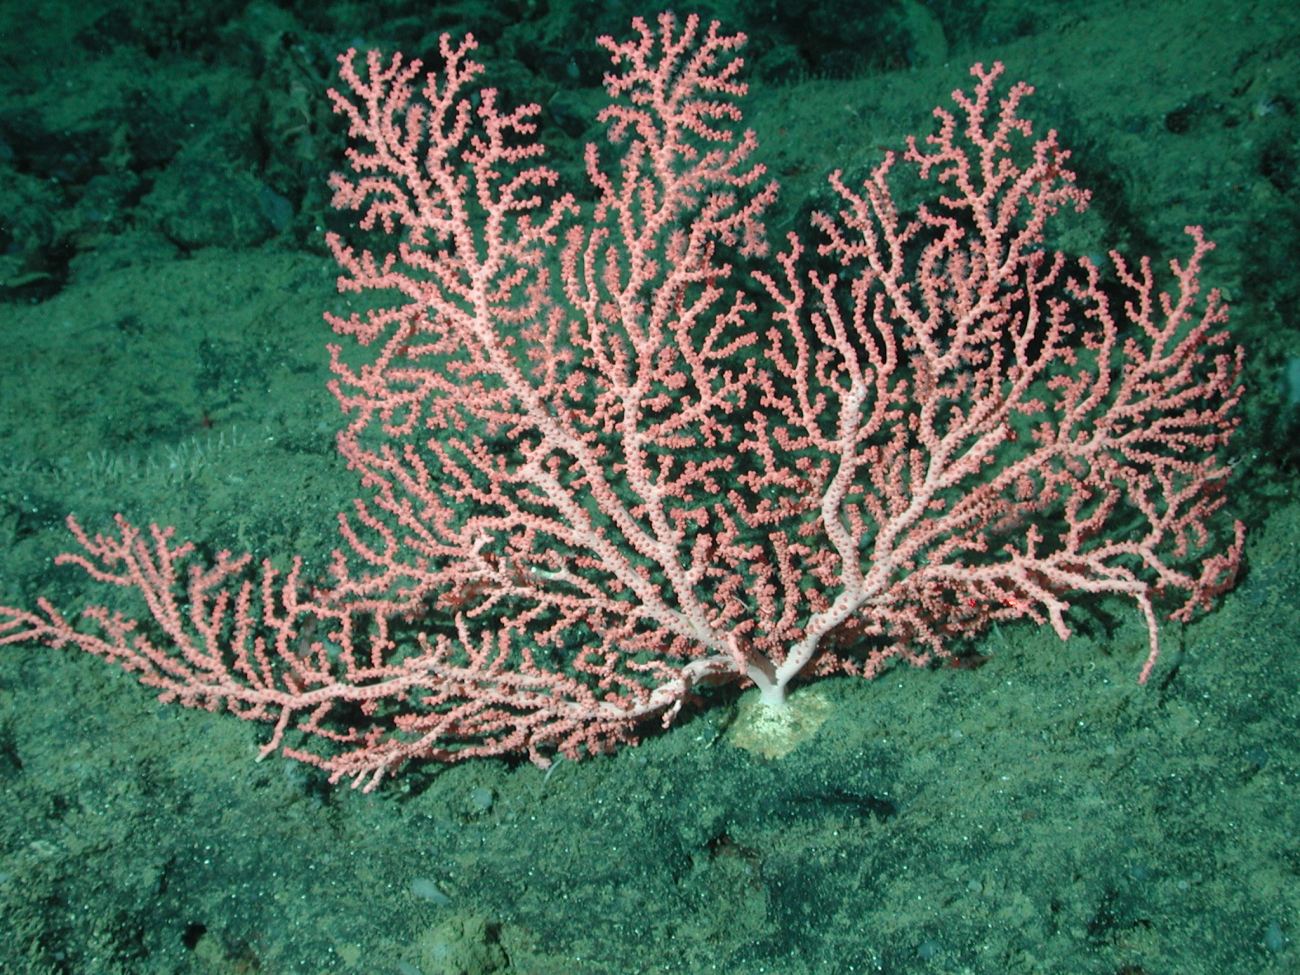 Bubblegum coral (Paragorgia arborea)